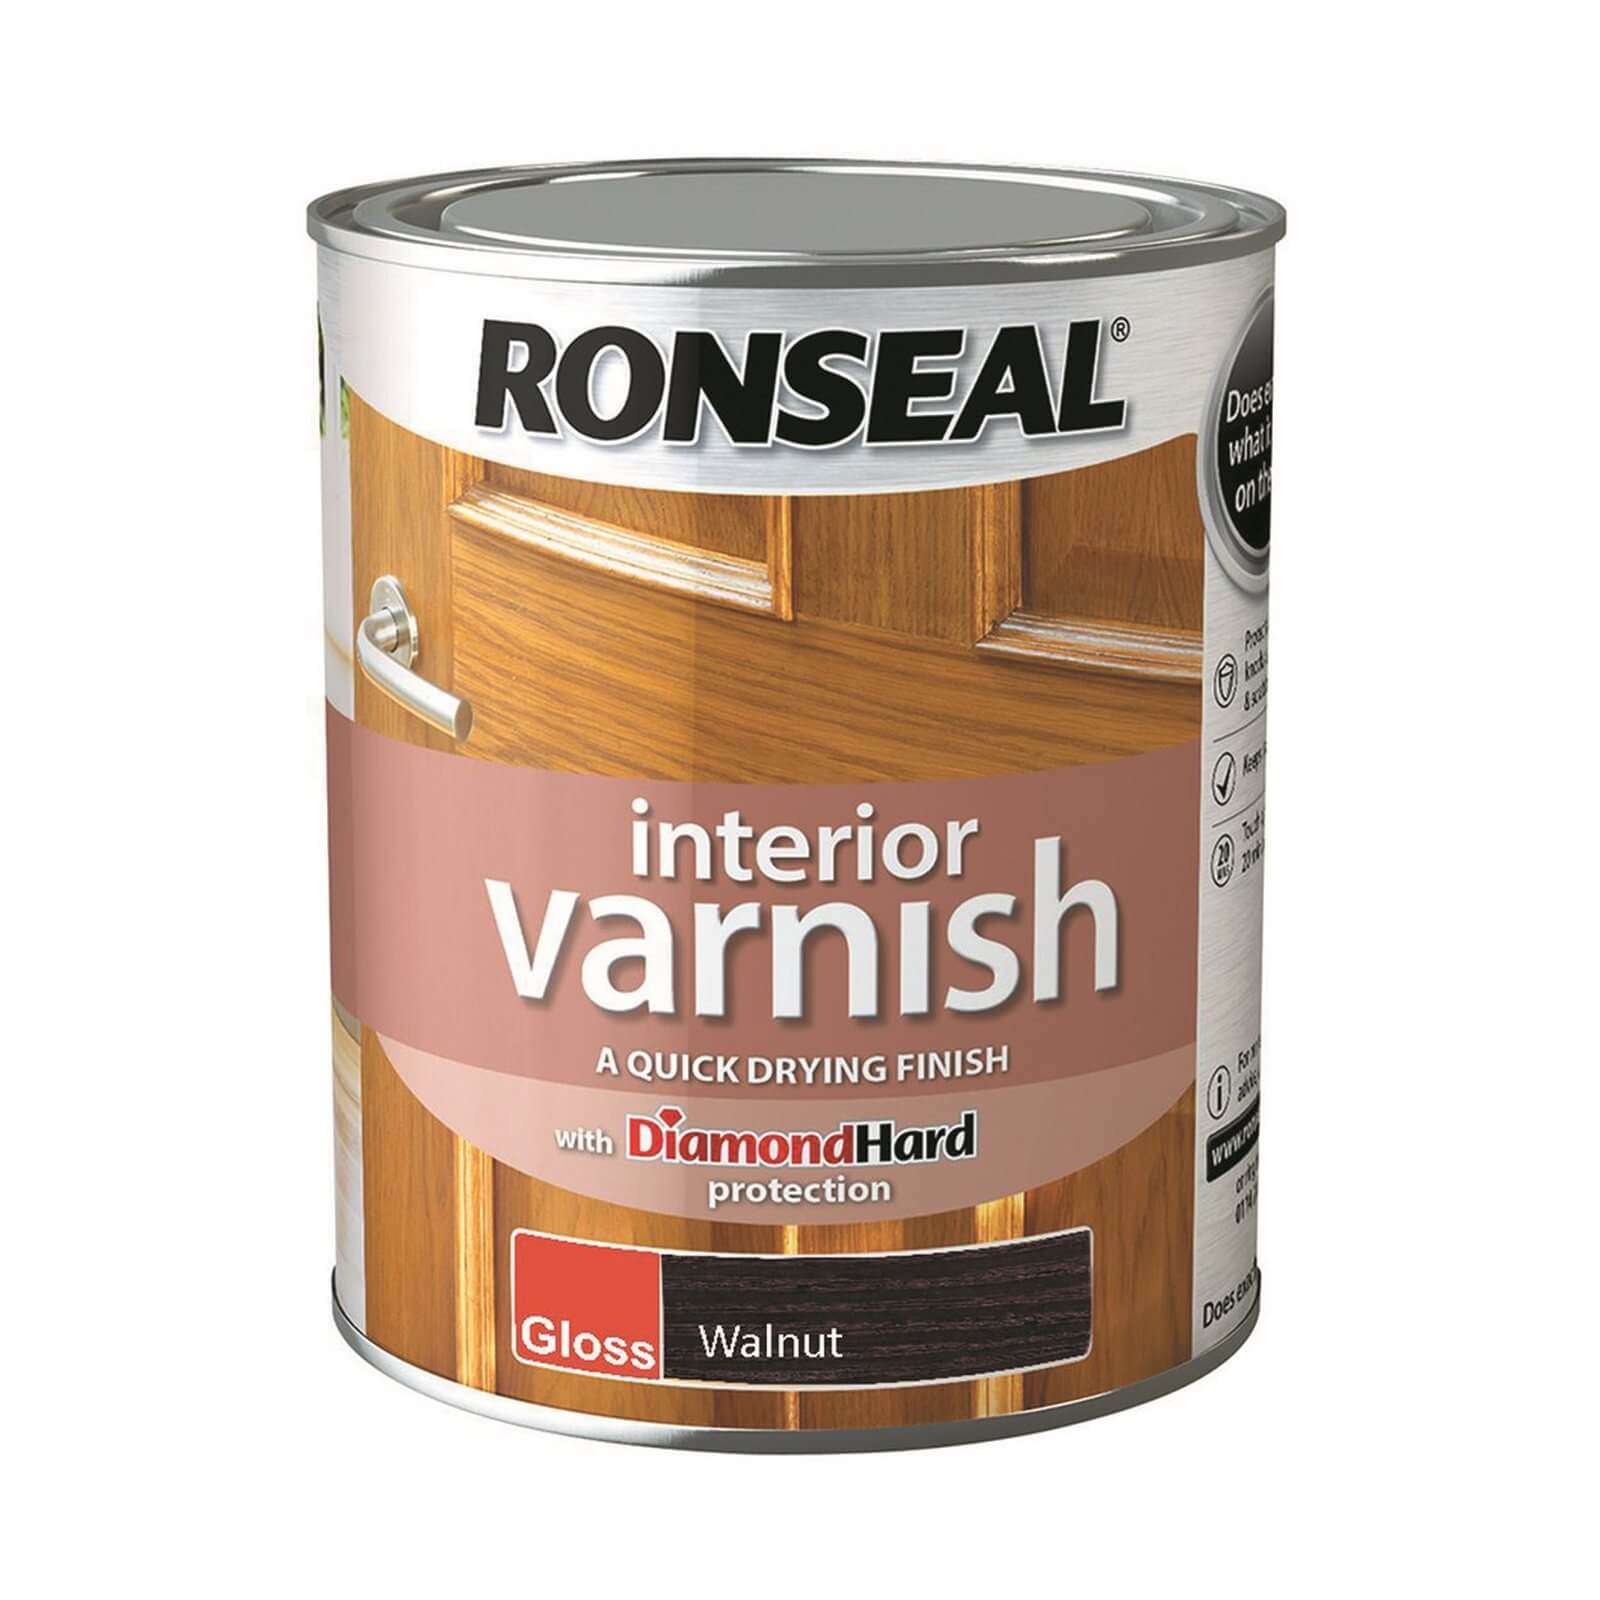 Ronseal Interior Varnish Gloss Walnut - 750ml